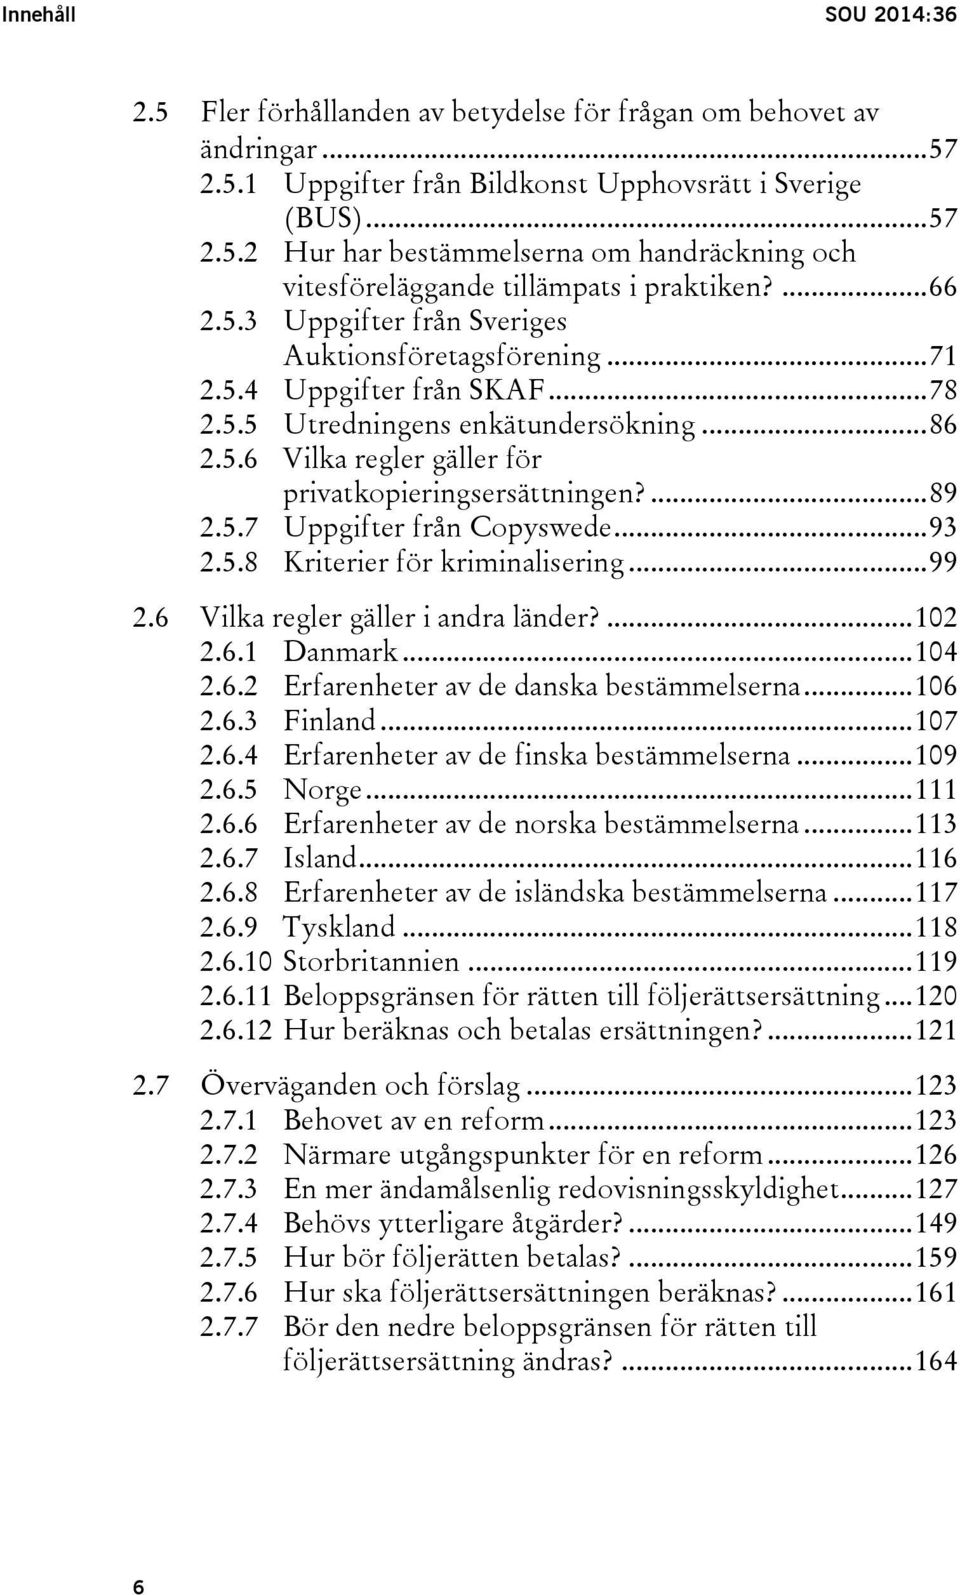 ... 89 2.5.7 Uppgifter från Copyswede... 93 2.5.8 Kriterier för kriminalisering... 99 2.6 Vilka regler gäller i andra länder?... 102 2.6.1 Danmark... 104 2.6.2 Erfarenheter av de danska bestämmelserna.